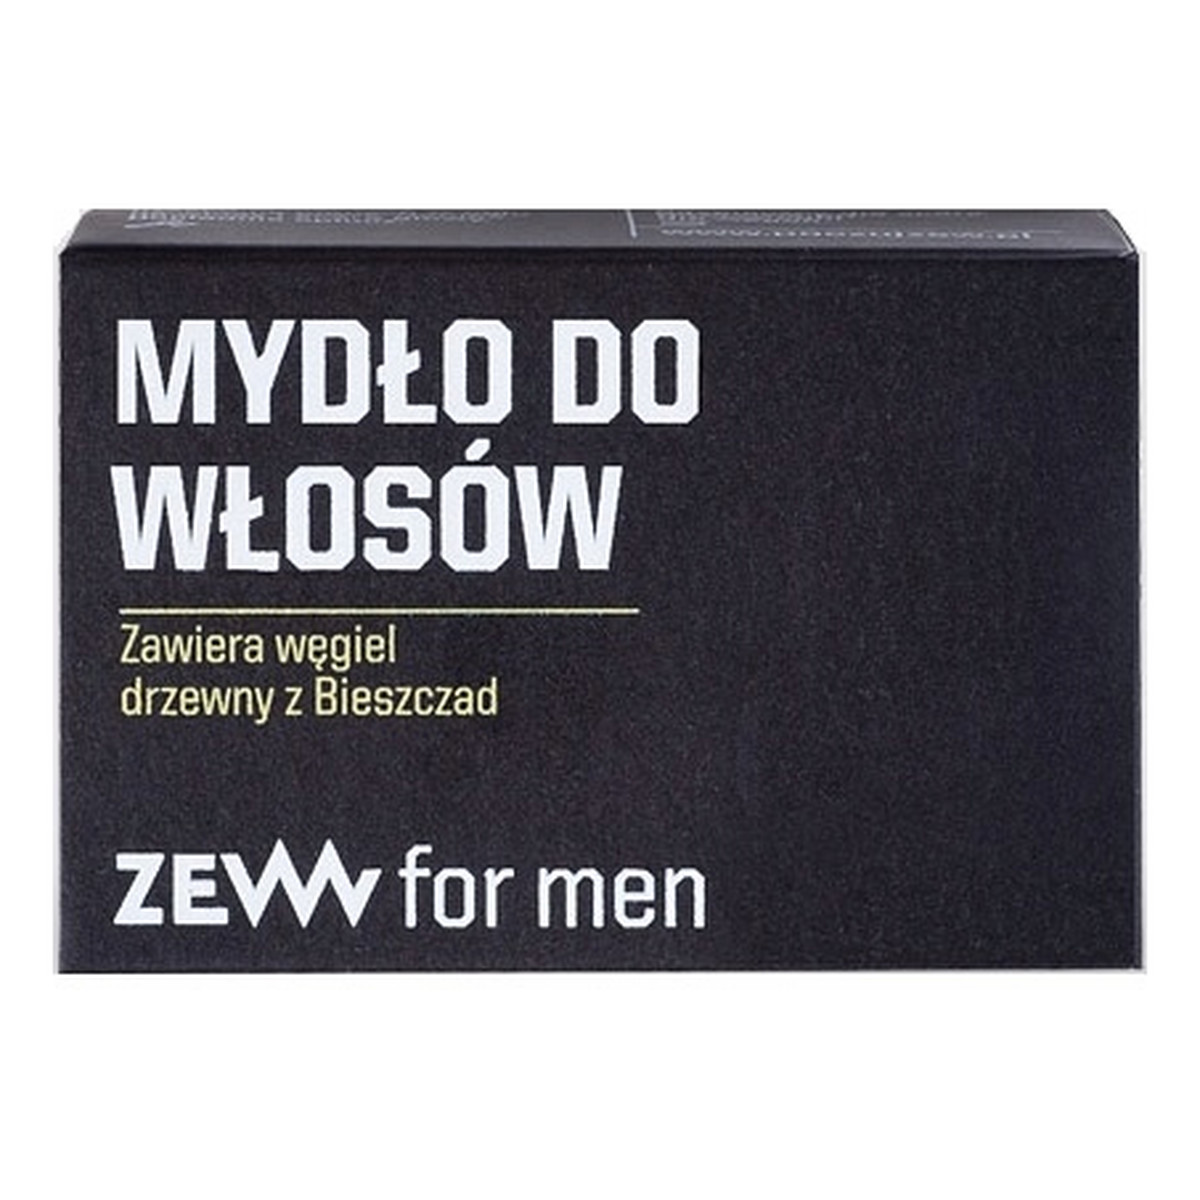 Zew For Men Mydło do włosów zawiera węgiel drzewny z Bieszczad 85ml